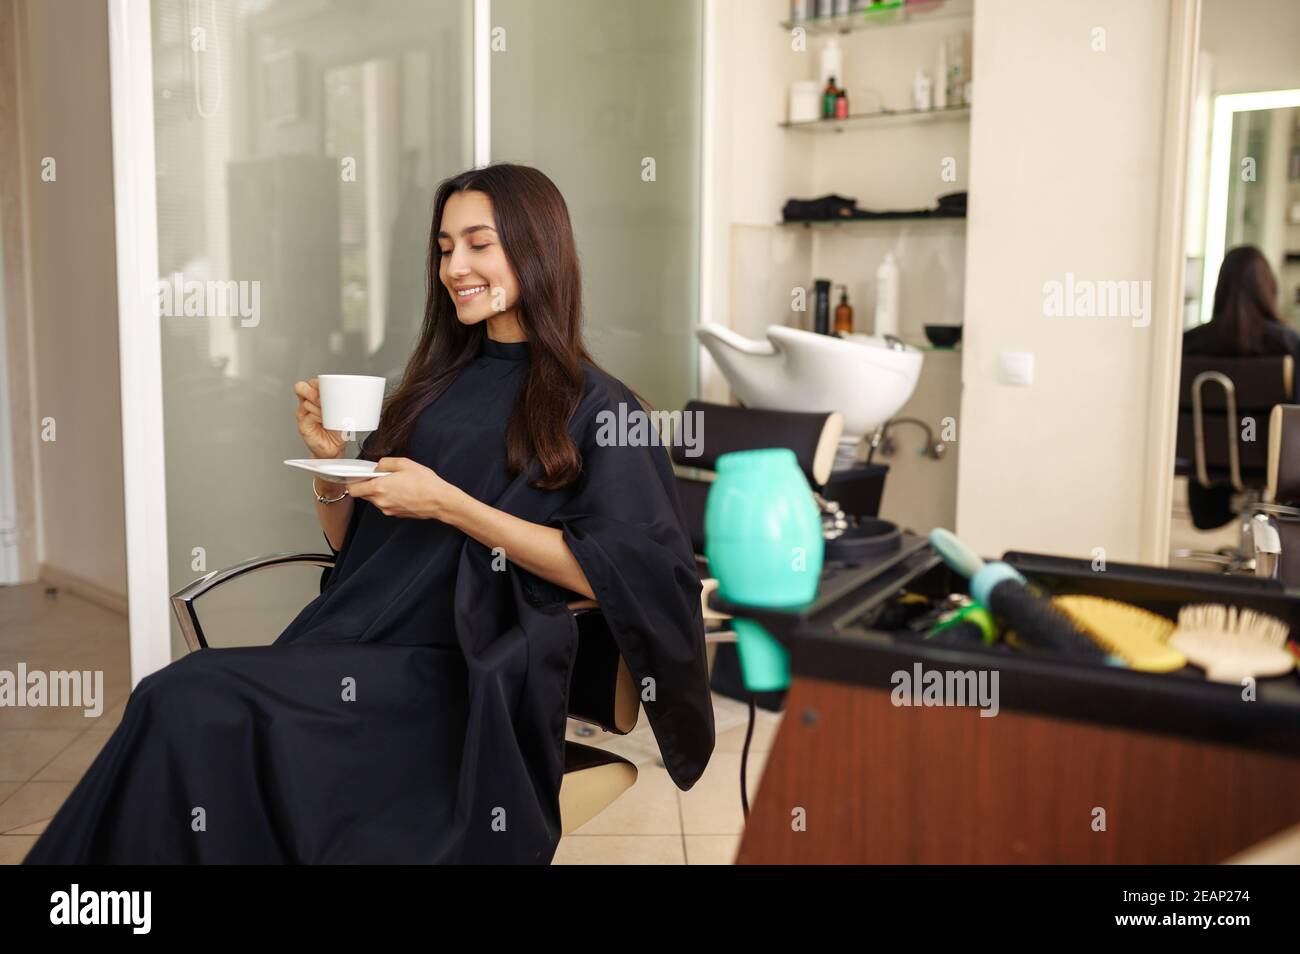 Femme avec café, salon de coiffure Banque D'Images